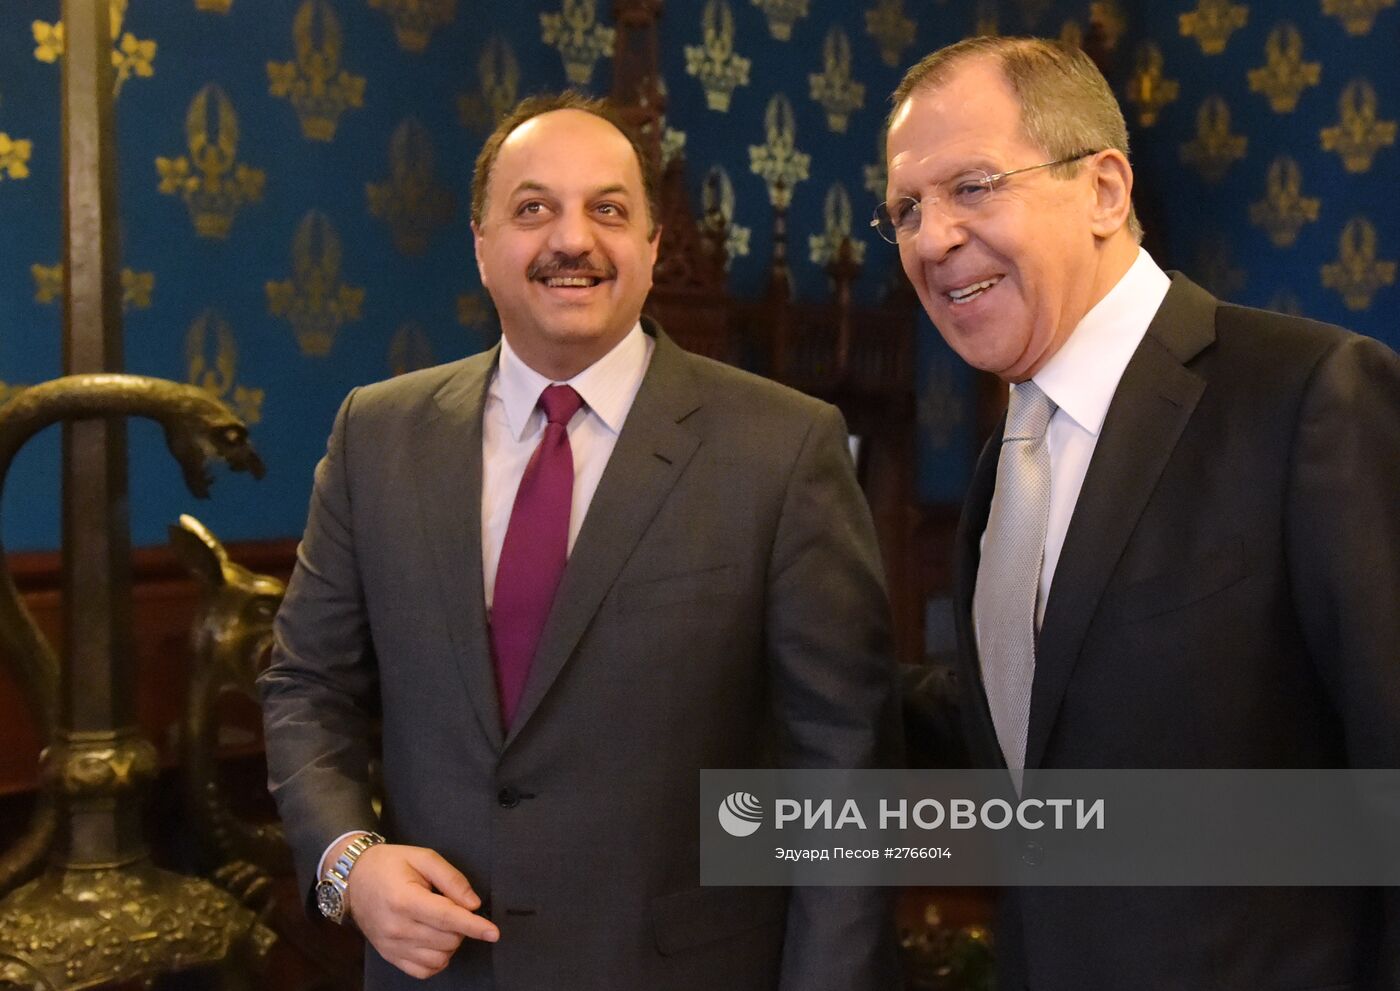 Министр иностранных дел России Сергей Лавров встретился с министром иностранных дел Катара Халедом Бен Мухаммеда Аль-Атыйи